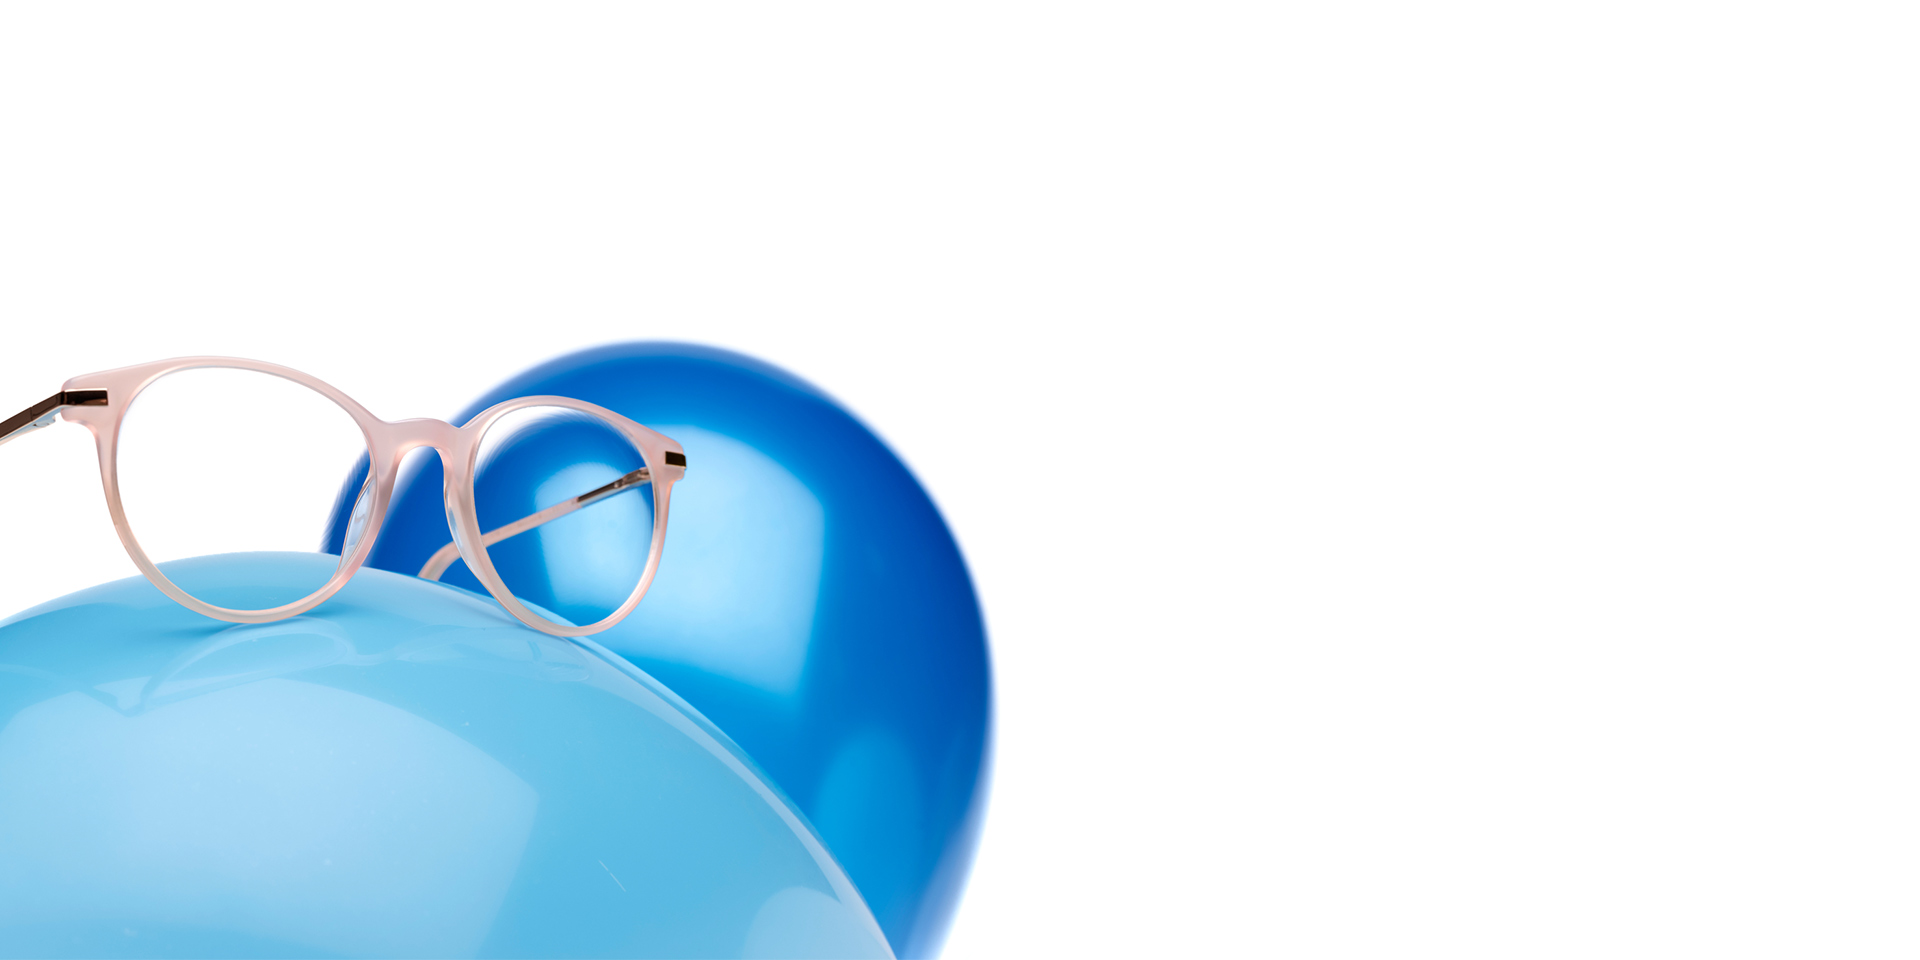 Bej pembemsi çerçeveli ZEISS MyoCare gözlük camları açık mavi bir balon üzerinde gösteriliyor. Arka planda biraz daha koyu mavi bir balon daha var.